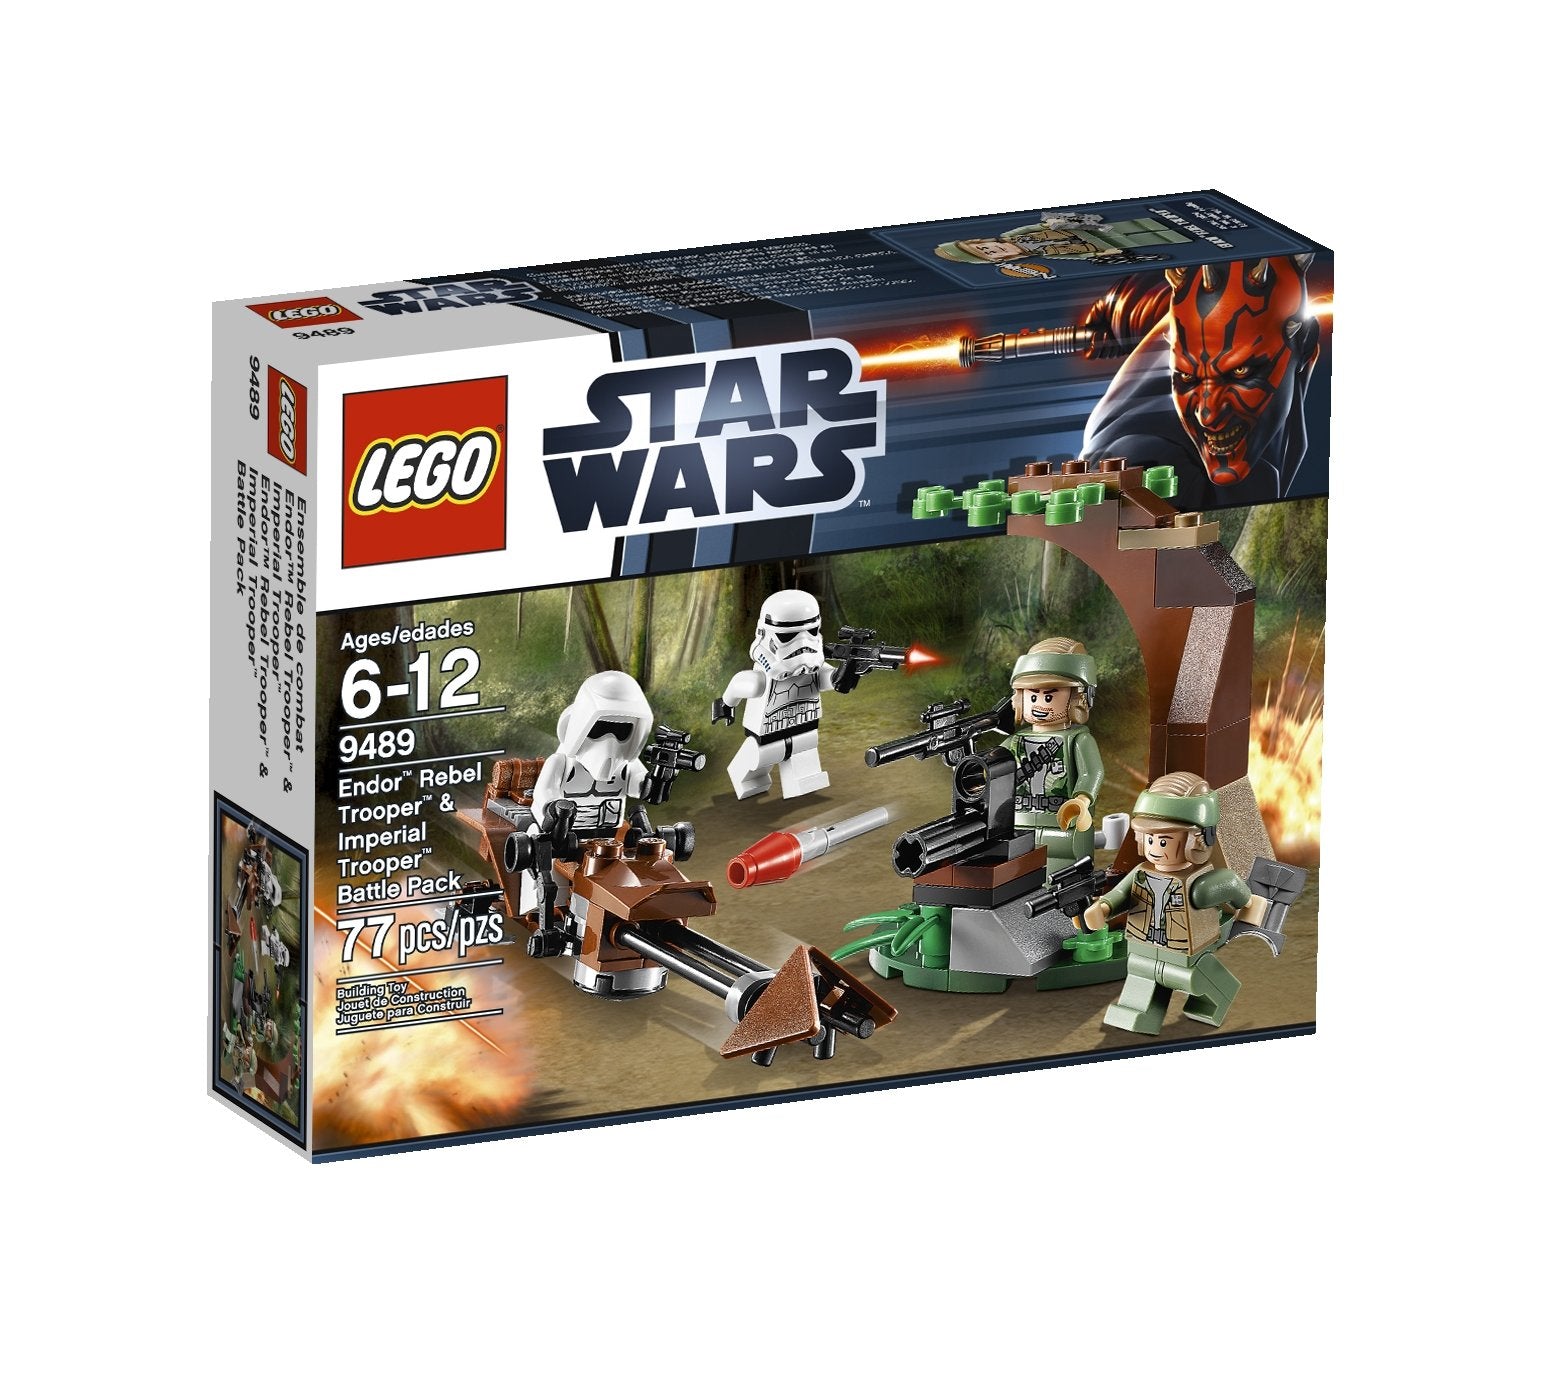 LEGO Star Wars Endor Rebel Trooper & Imperial Trooper Battle Pack 9489